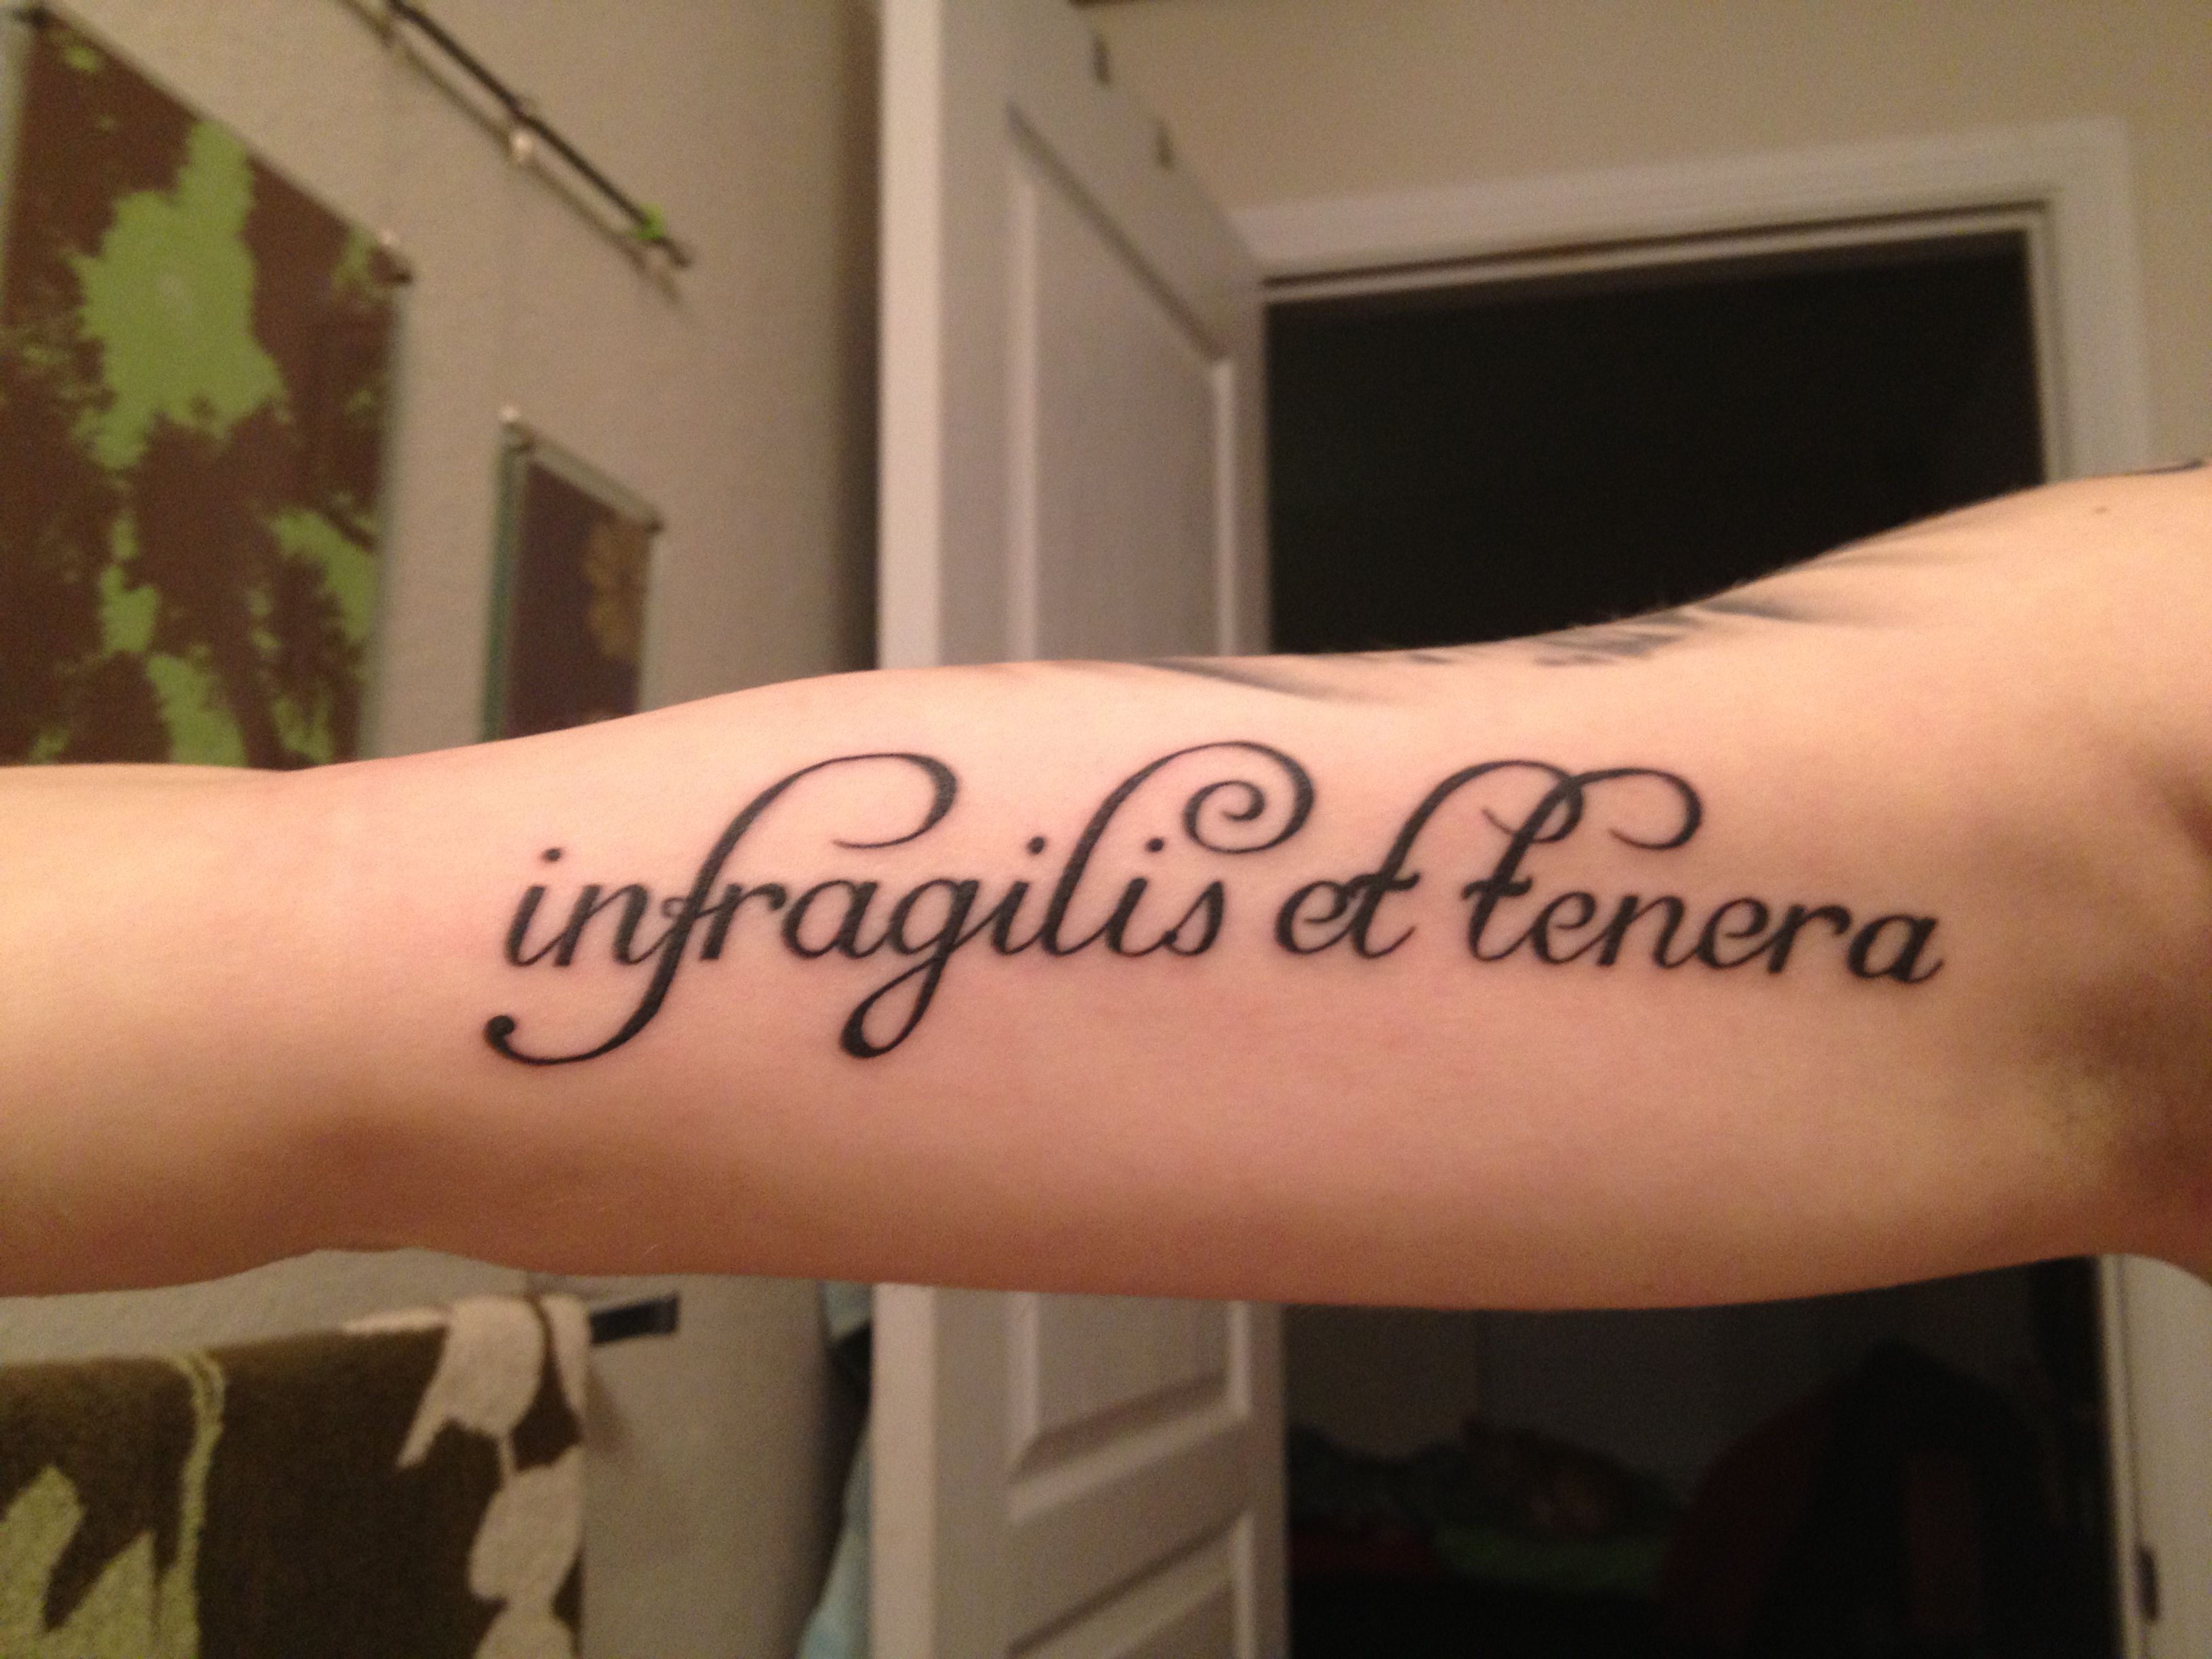 Тату на руке надписи женские со смыслом с переводом латыни фото красивые